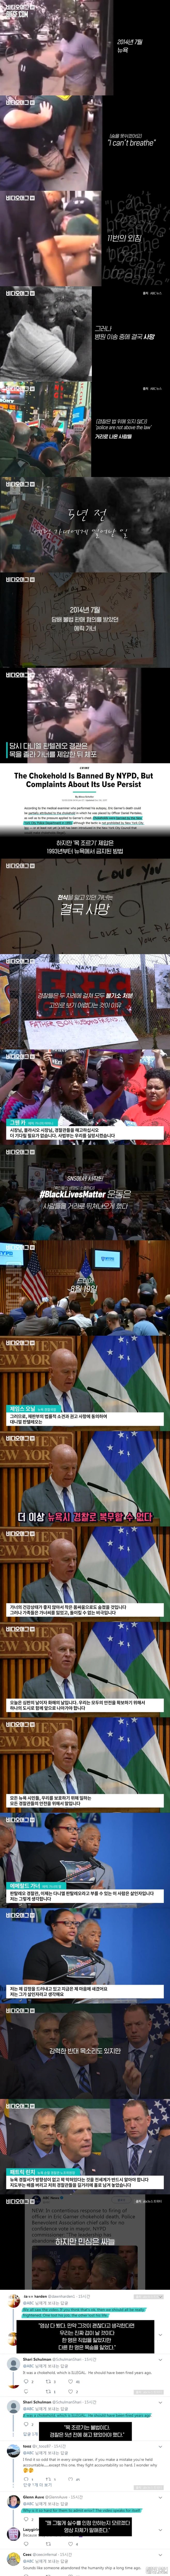 불법 제압으로 흑인 남성을 숨지게 한 뉴욕 백인 경찰관 파면.jpg